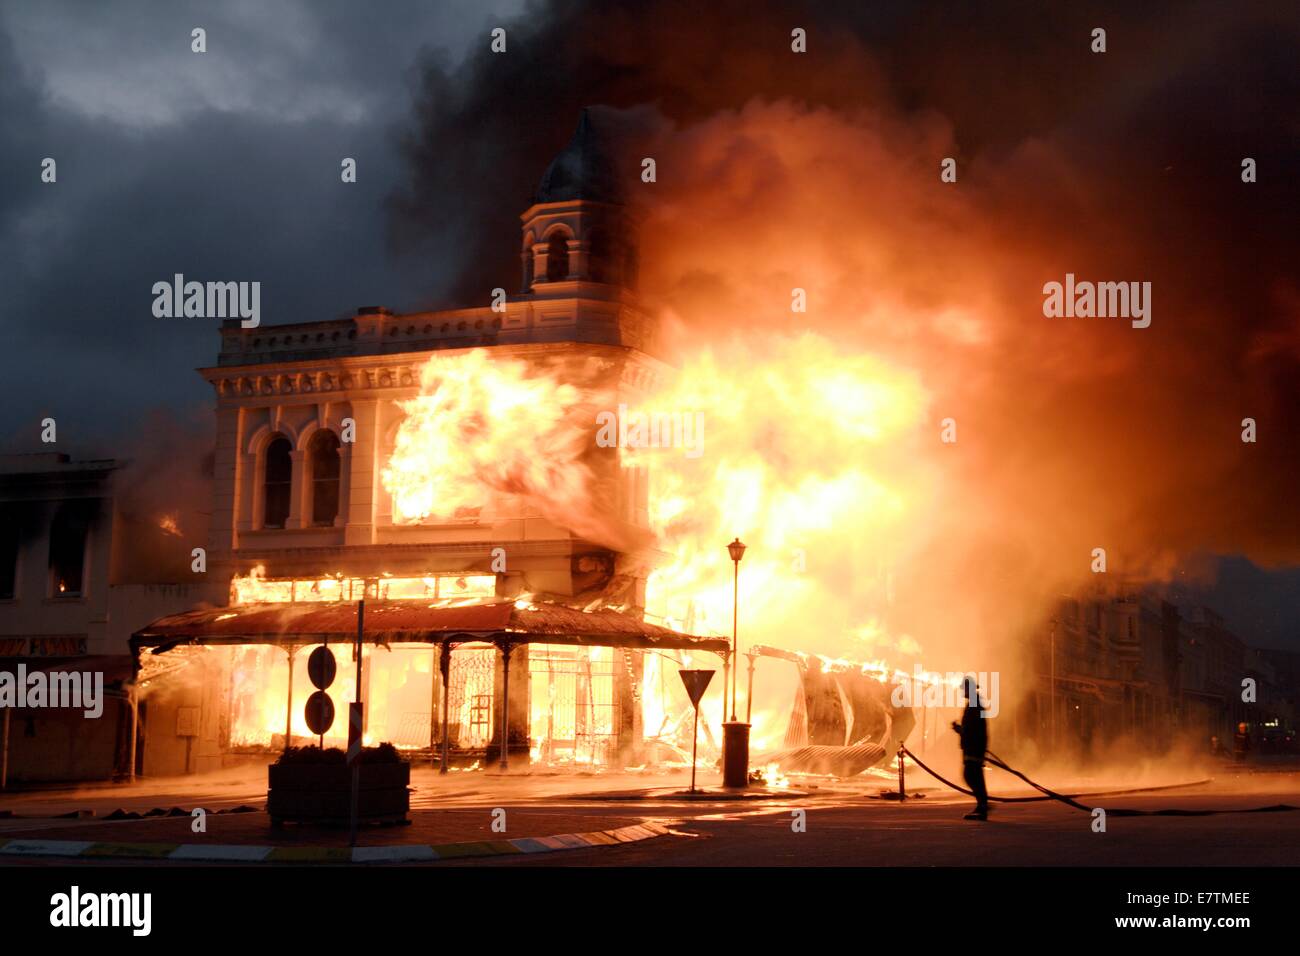 Historisches Gebäude in Flammen verschlungen. Fotografiert in Grahamstown, Eastern Cape, Südafrika. Stockfoto